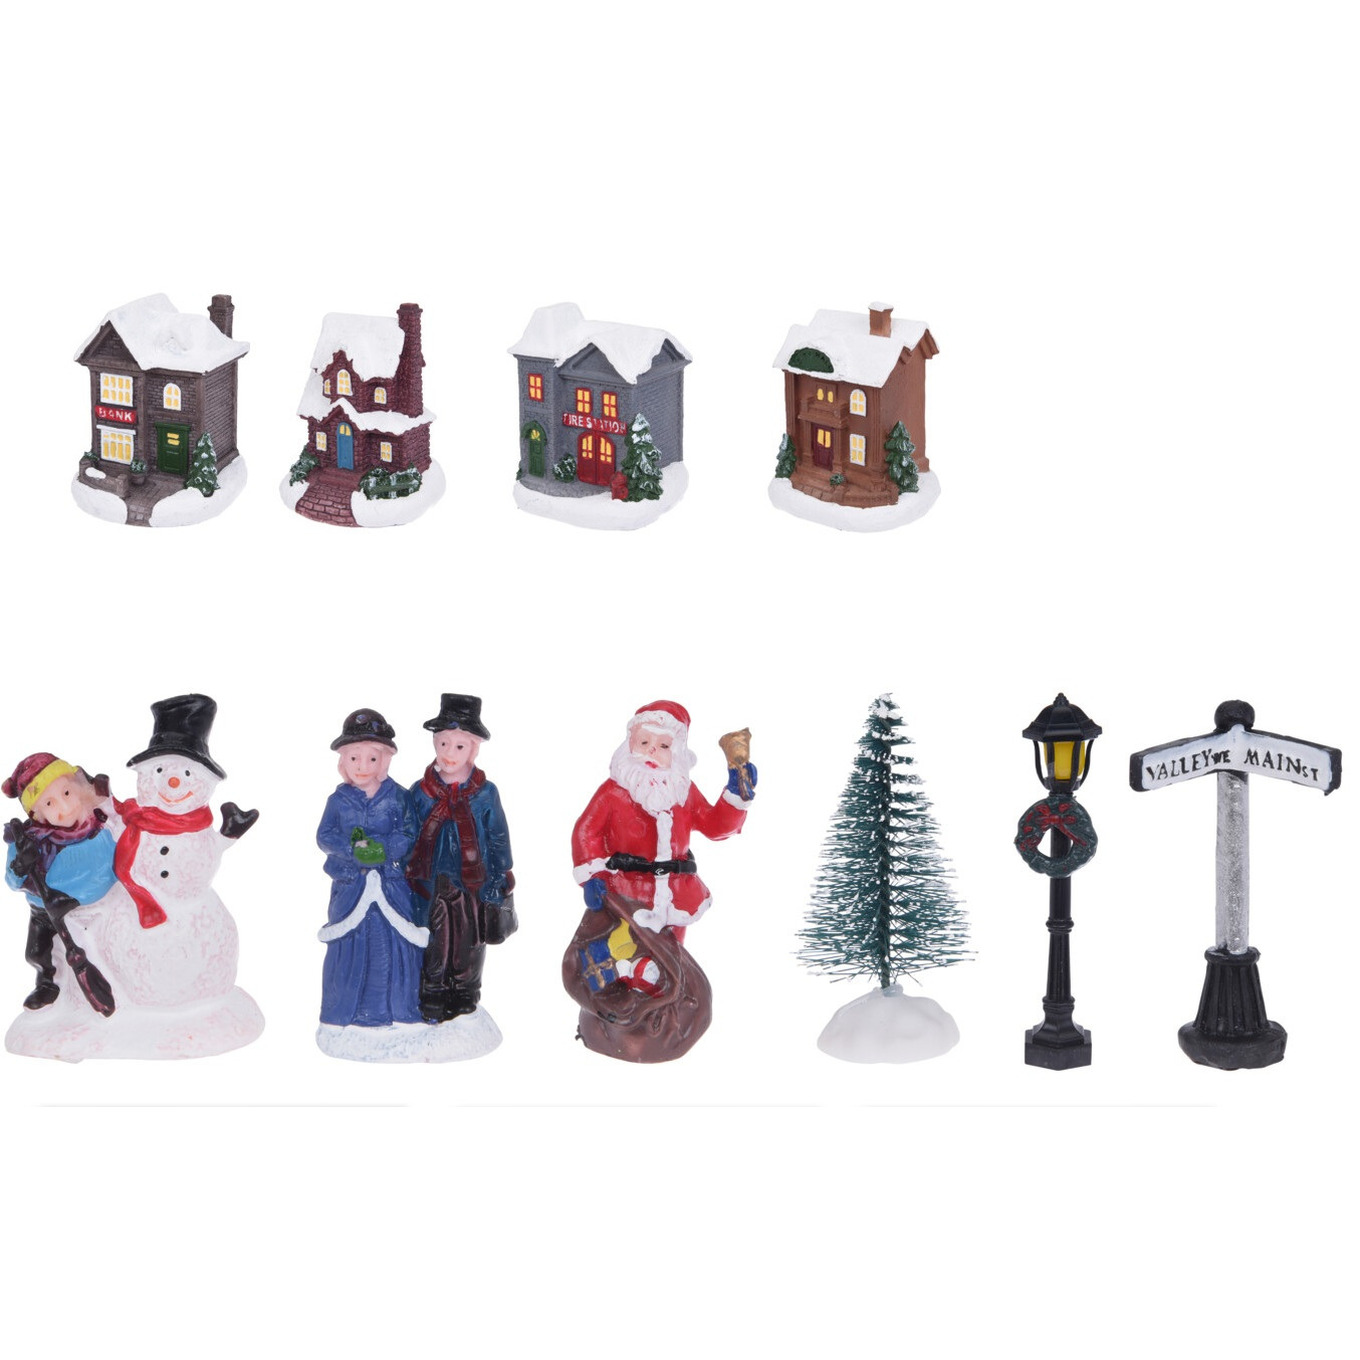 Kerstdorp met accessoires miniatuur figuurtjes en huisjes 14-delig